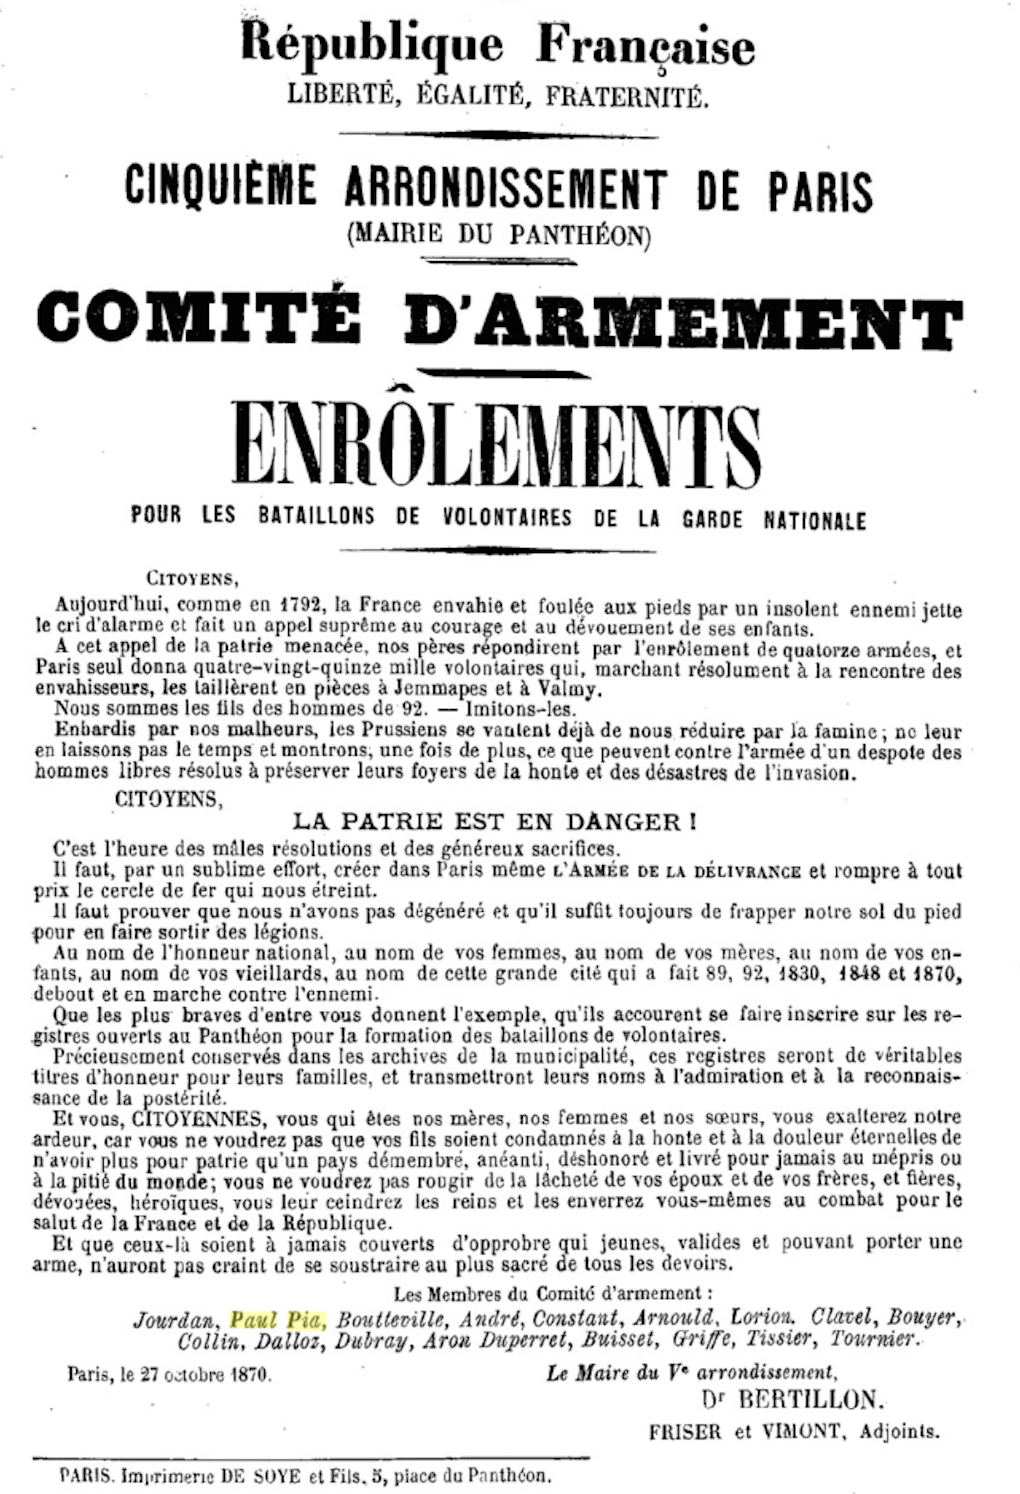 Affiche du Comité d'Armement du Cinquième Arrondissement (Panthéon) de Paris / 27 octobre 1870